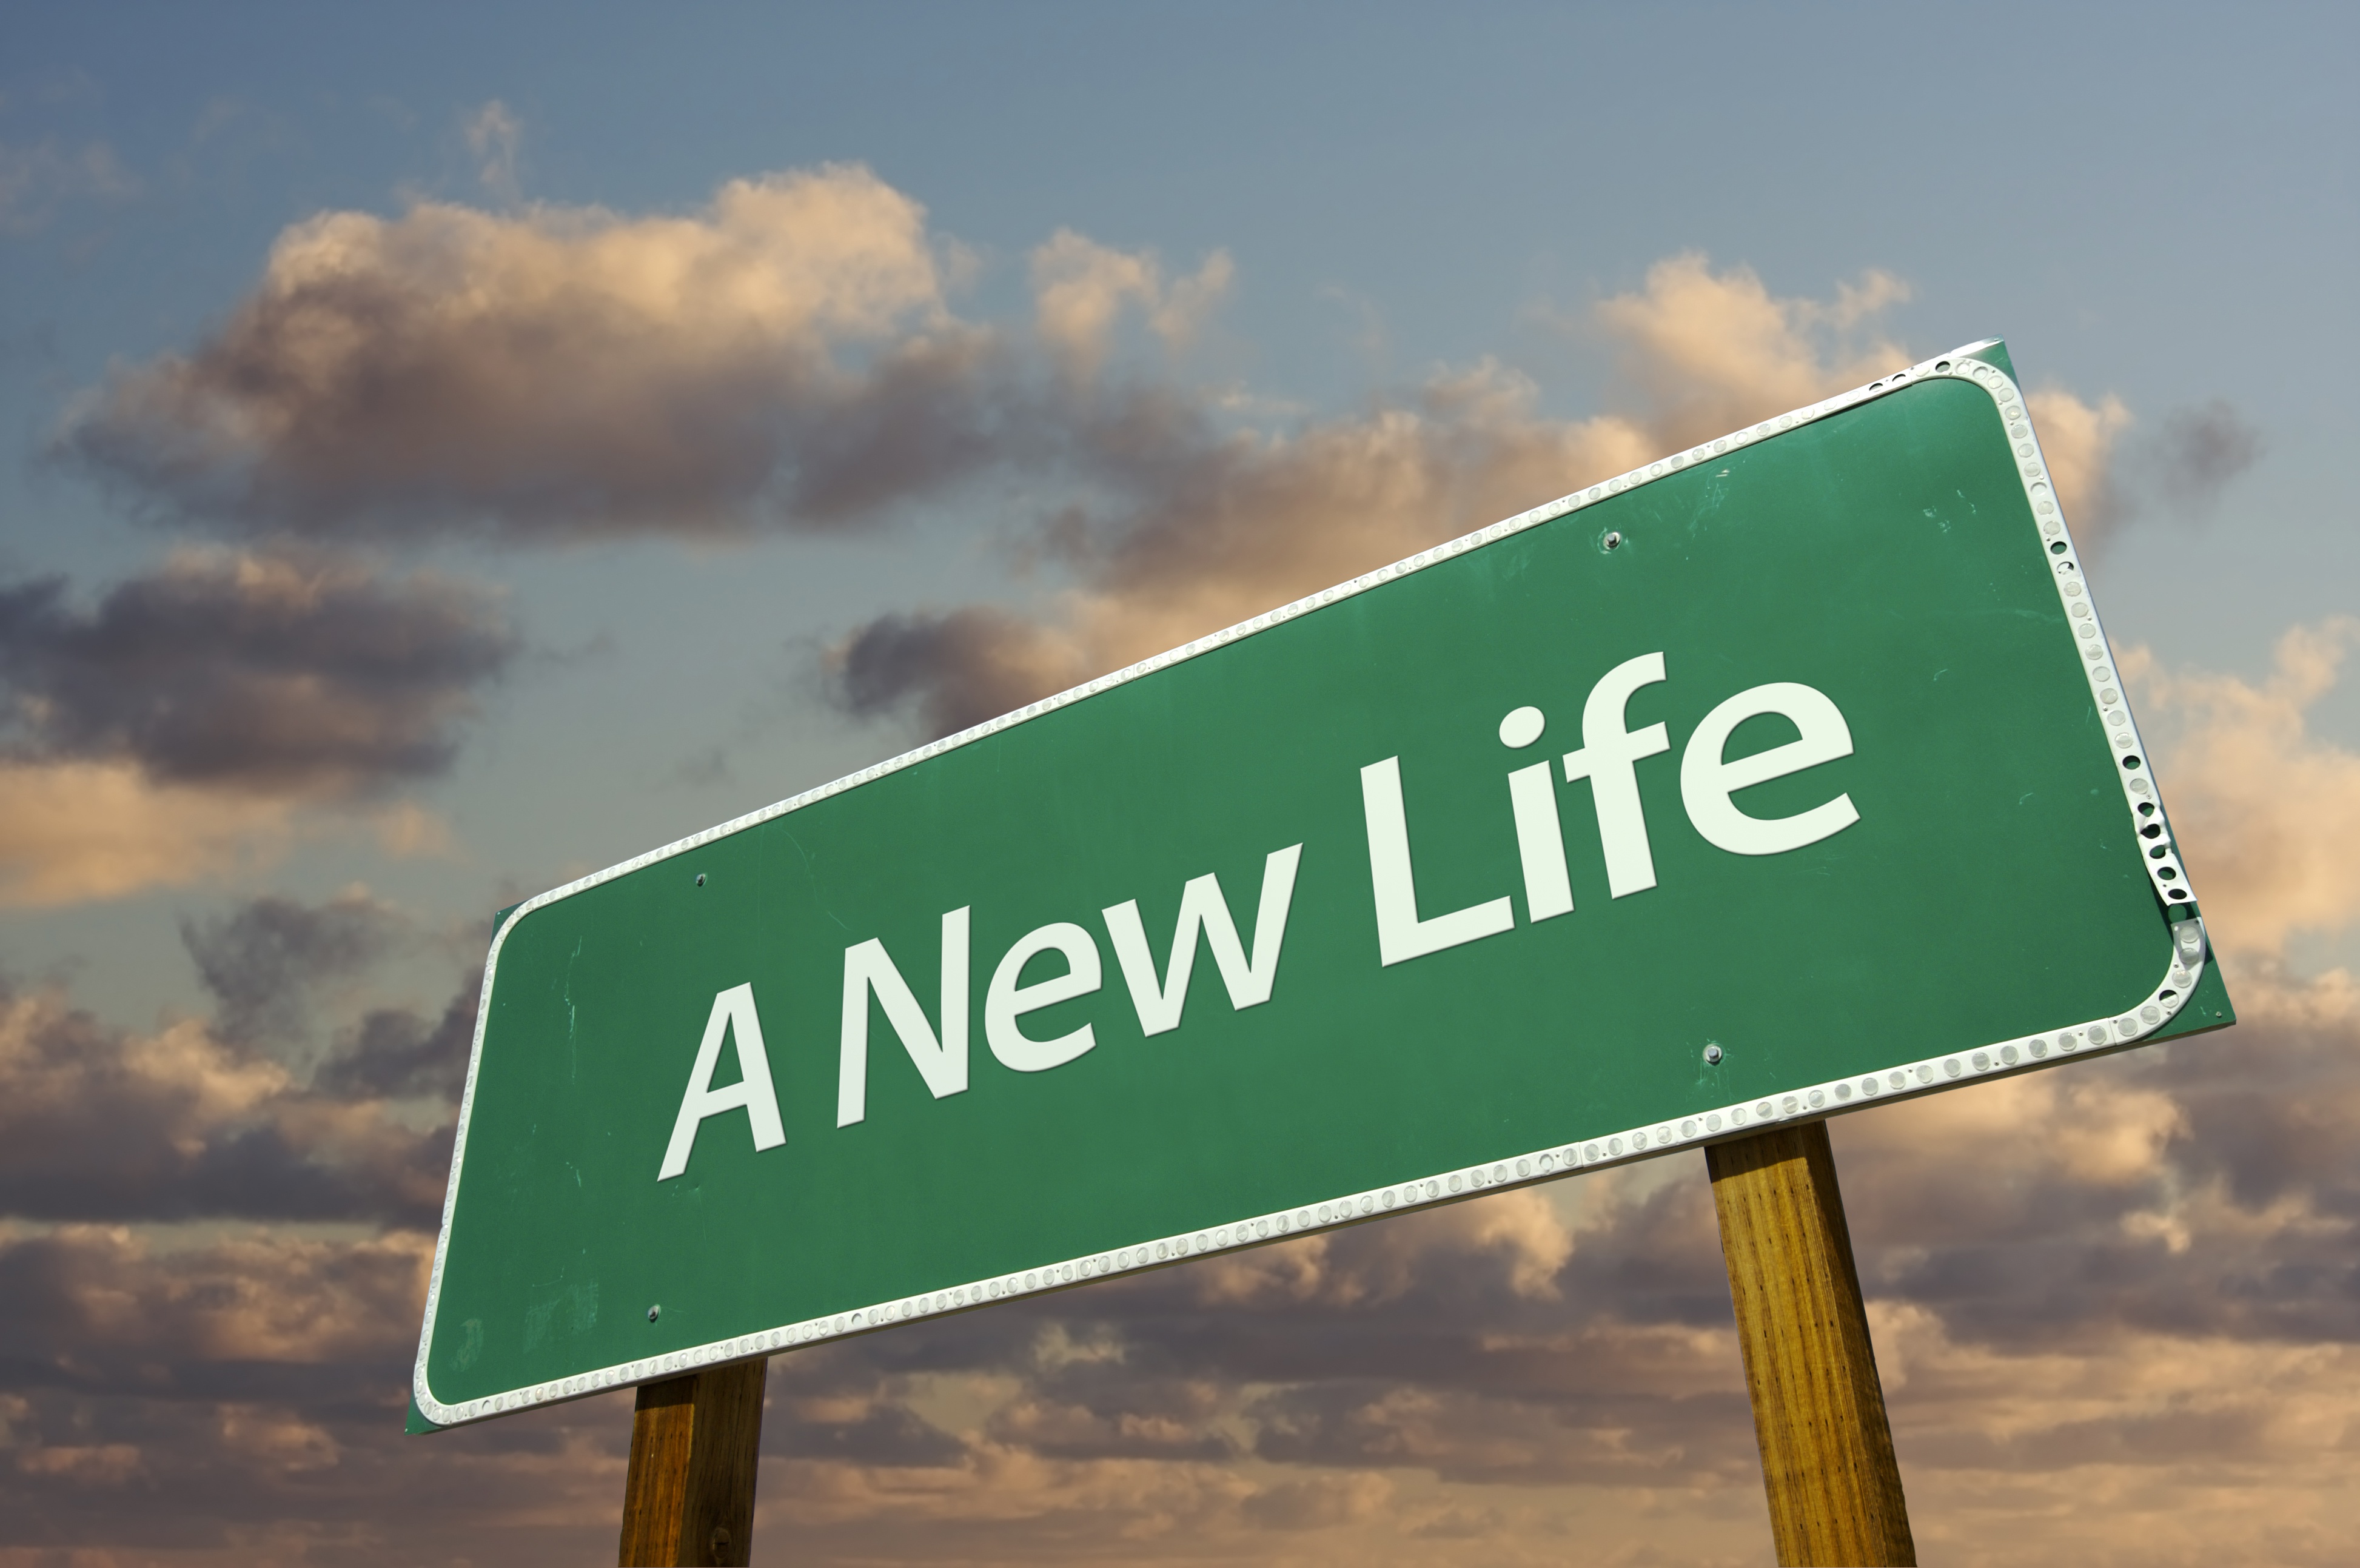 Новая жизнь карта. The New Life. Знак новая жизнь. Табличка новая жизнь. Свободные экономические зоны картинки.